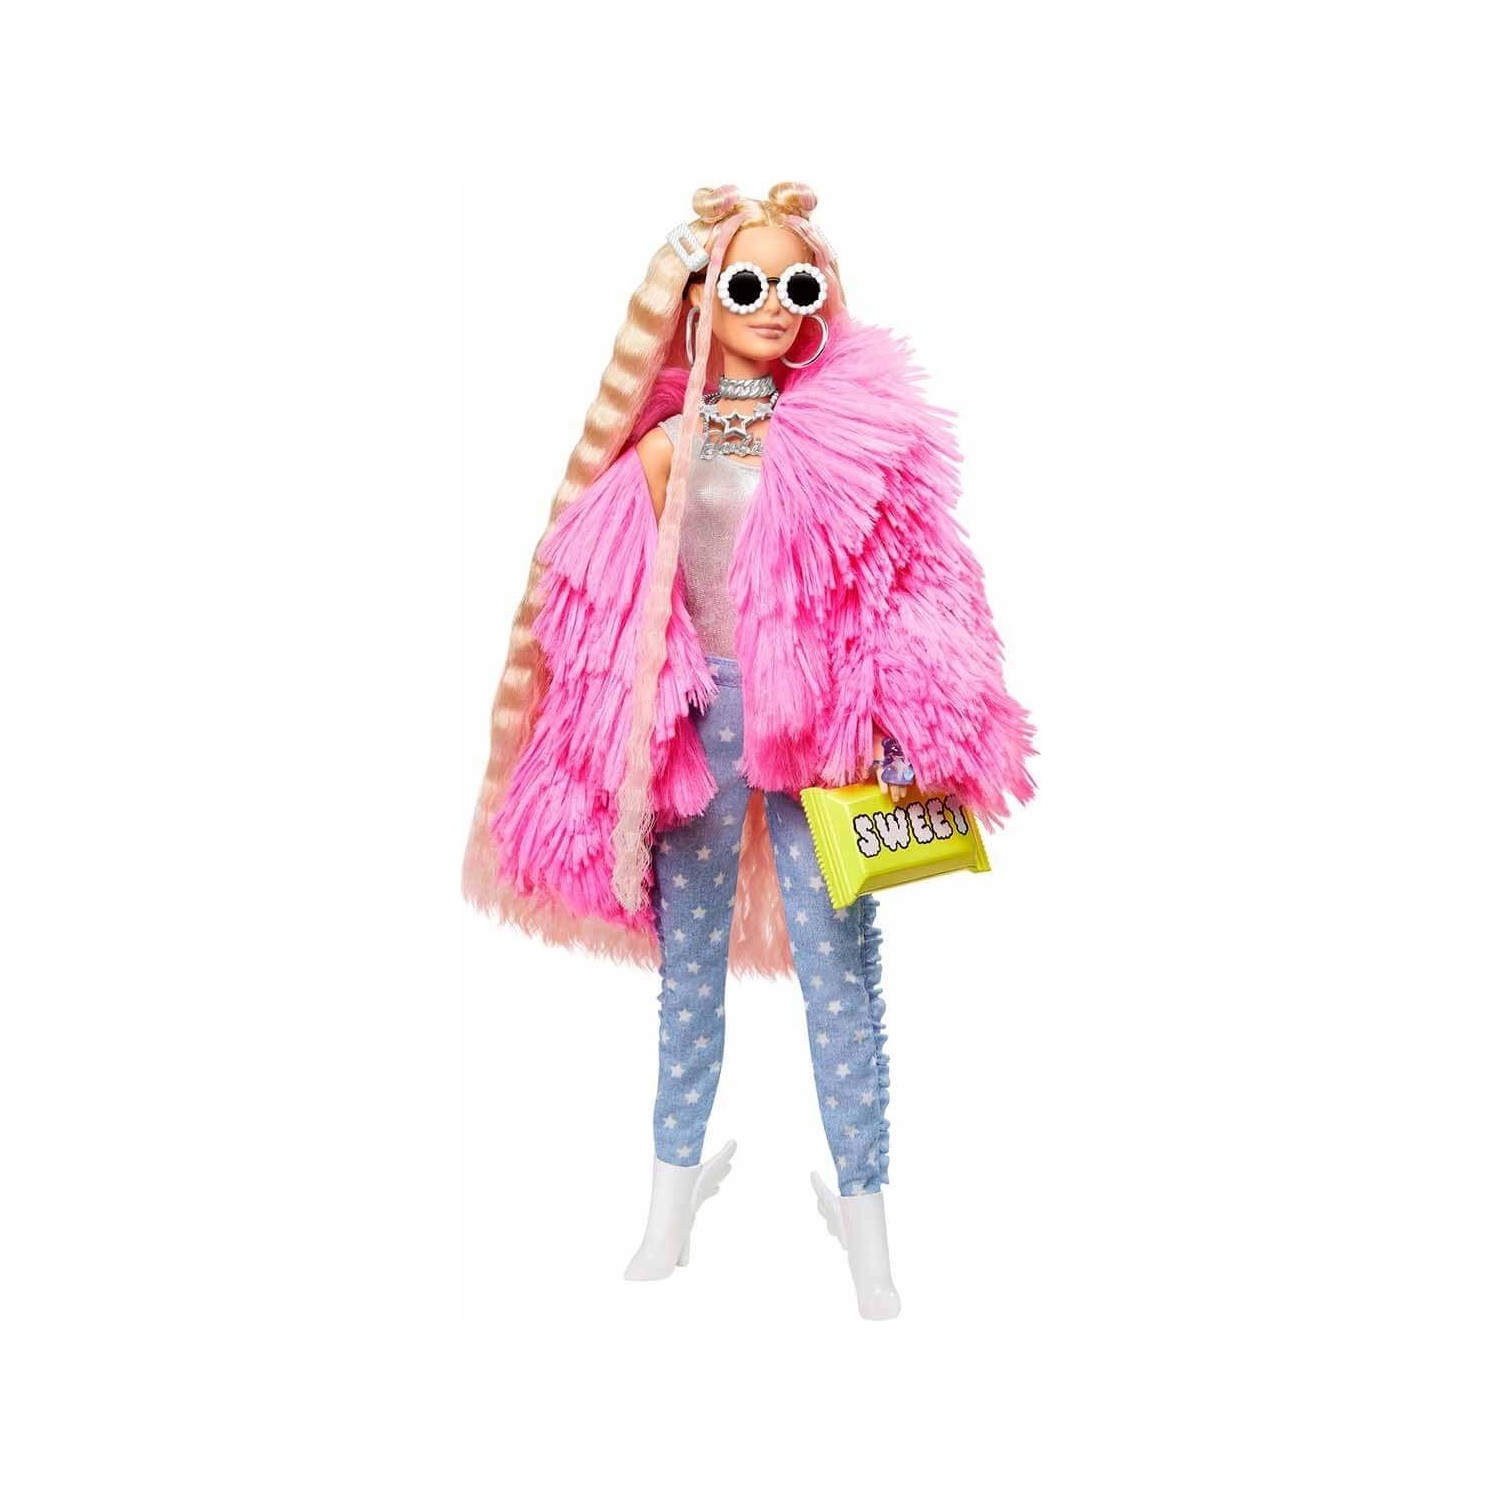 Кукла Barbie в дополнительной куртке GRN27 кукла barbie в клетчатой куртке hdj46